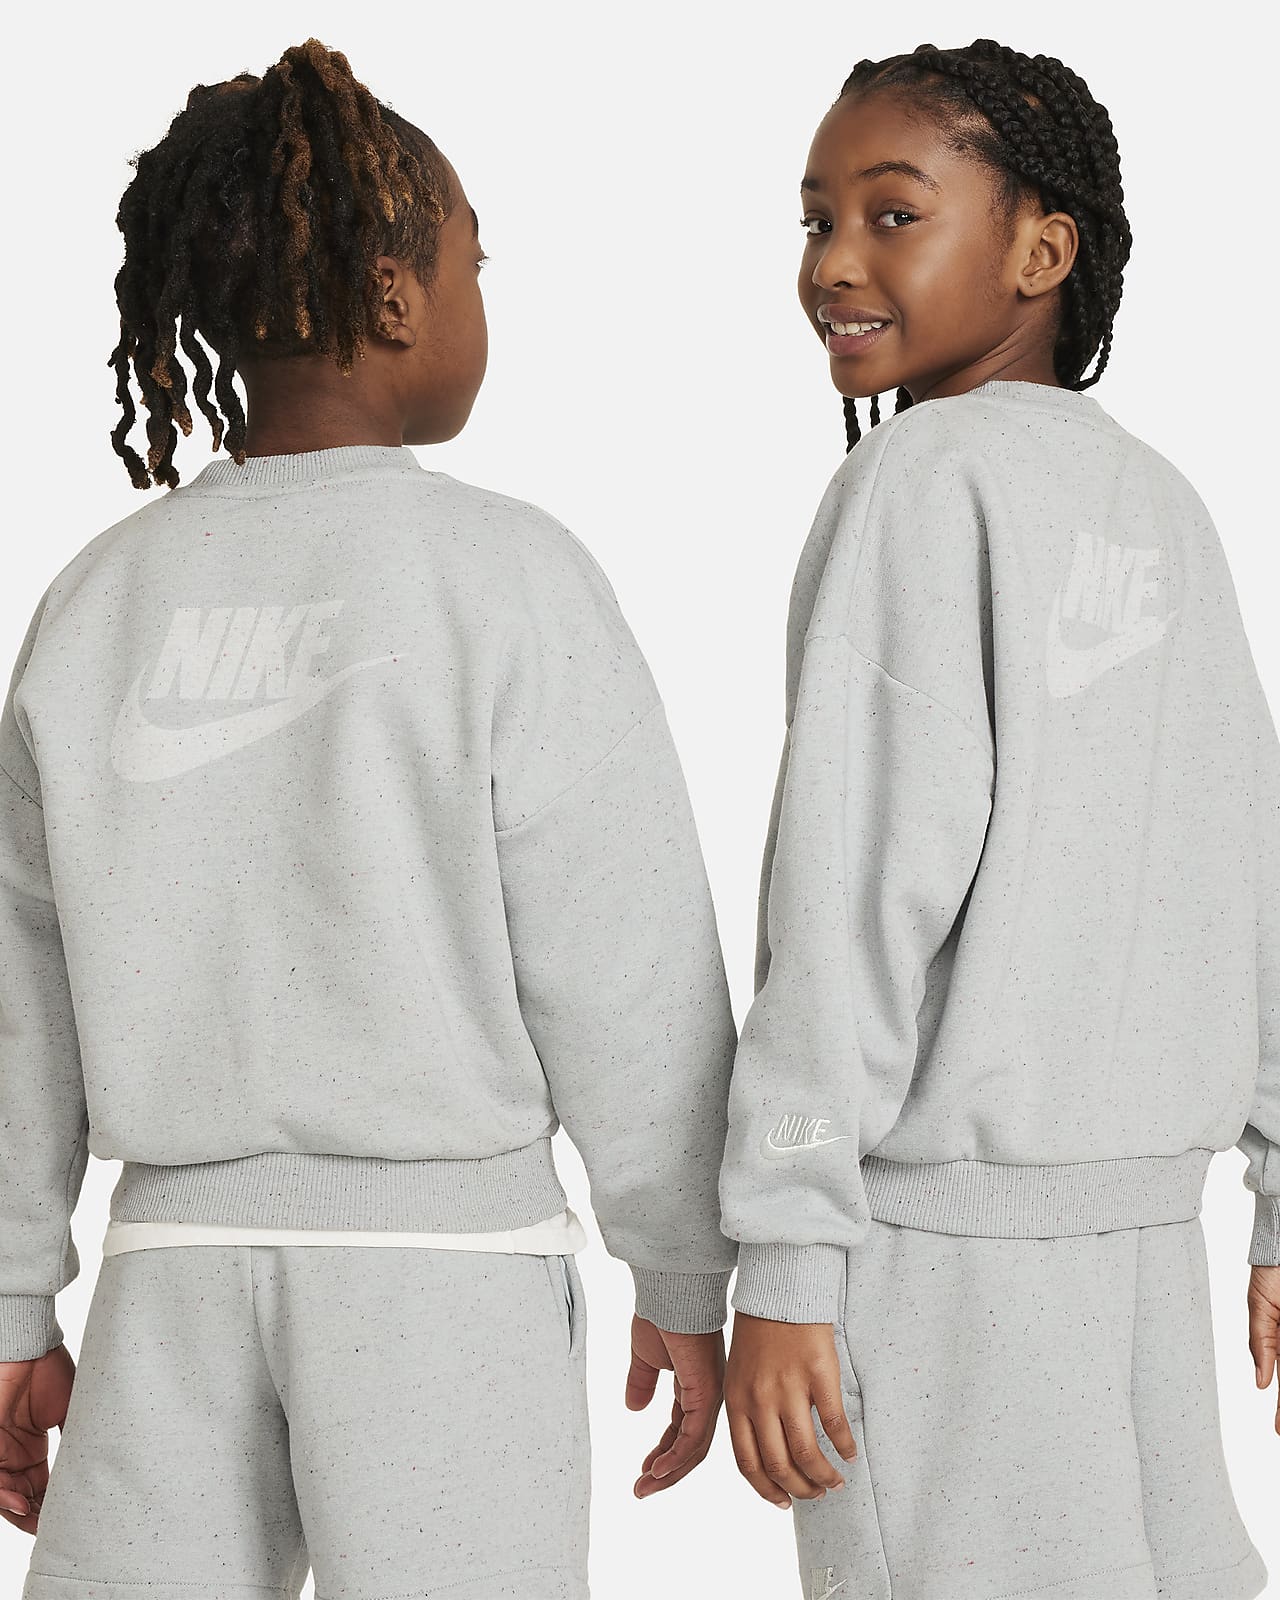 NIKE Girls' Nike Sportswear Icon Fleece Oversized Sweatshirt